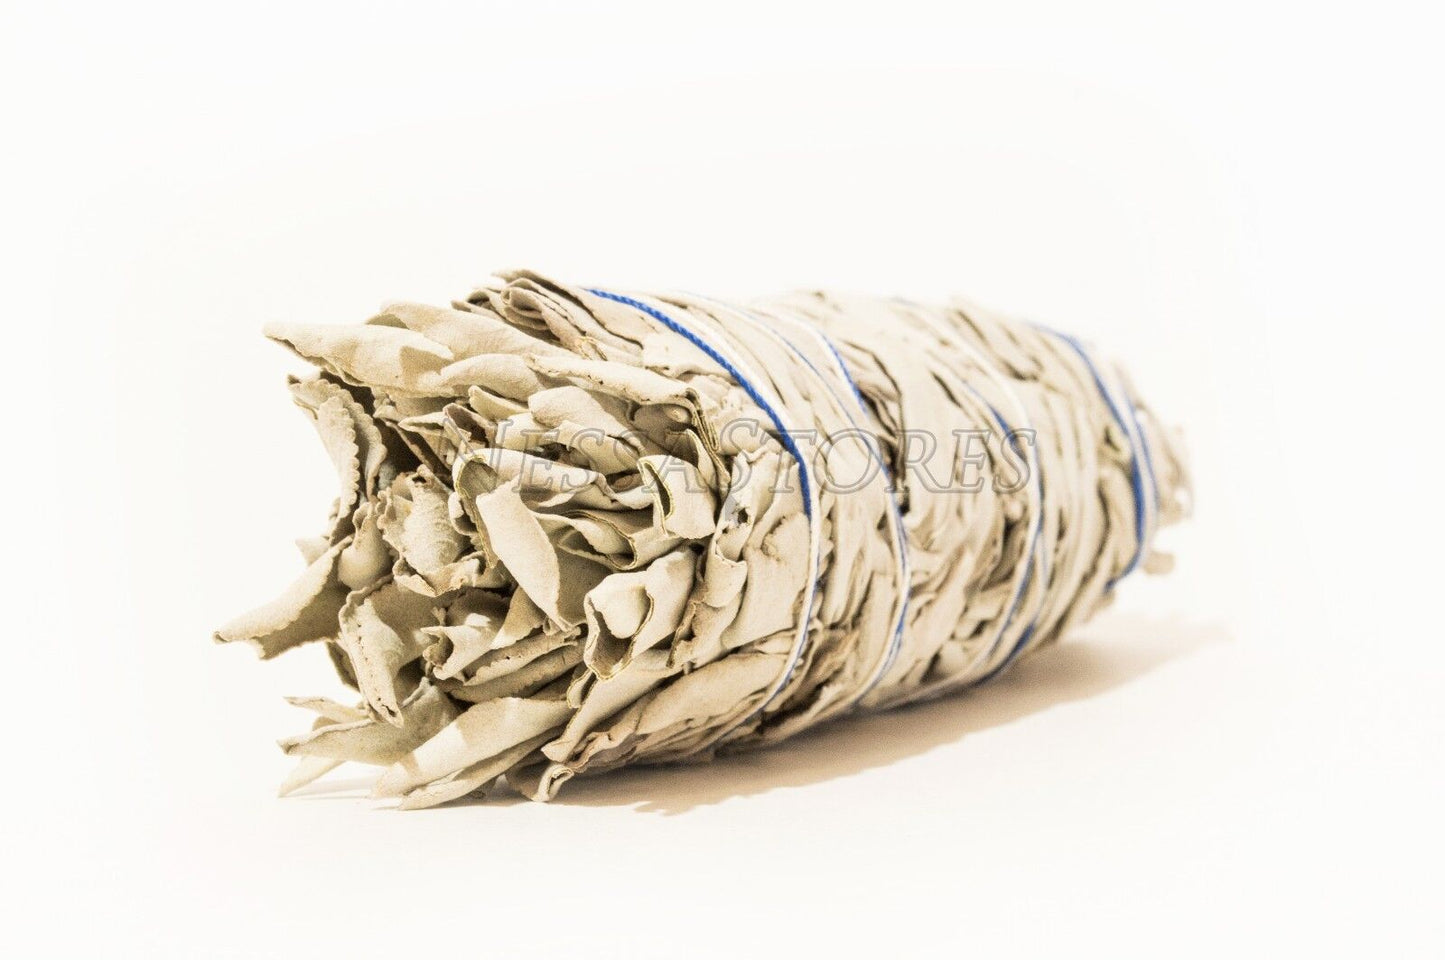 NessaStores California White Sage Smudge Incense 7"-8" Bundle (30 pcs) #JC-9